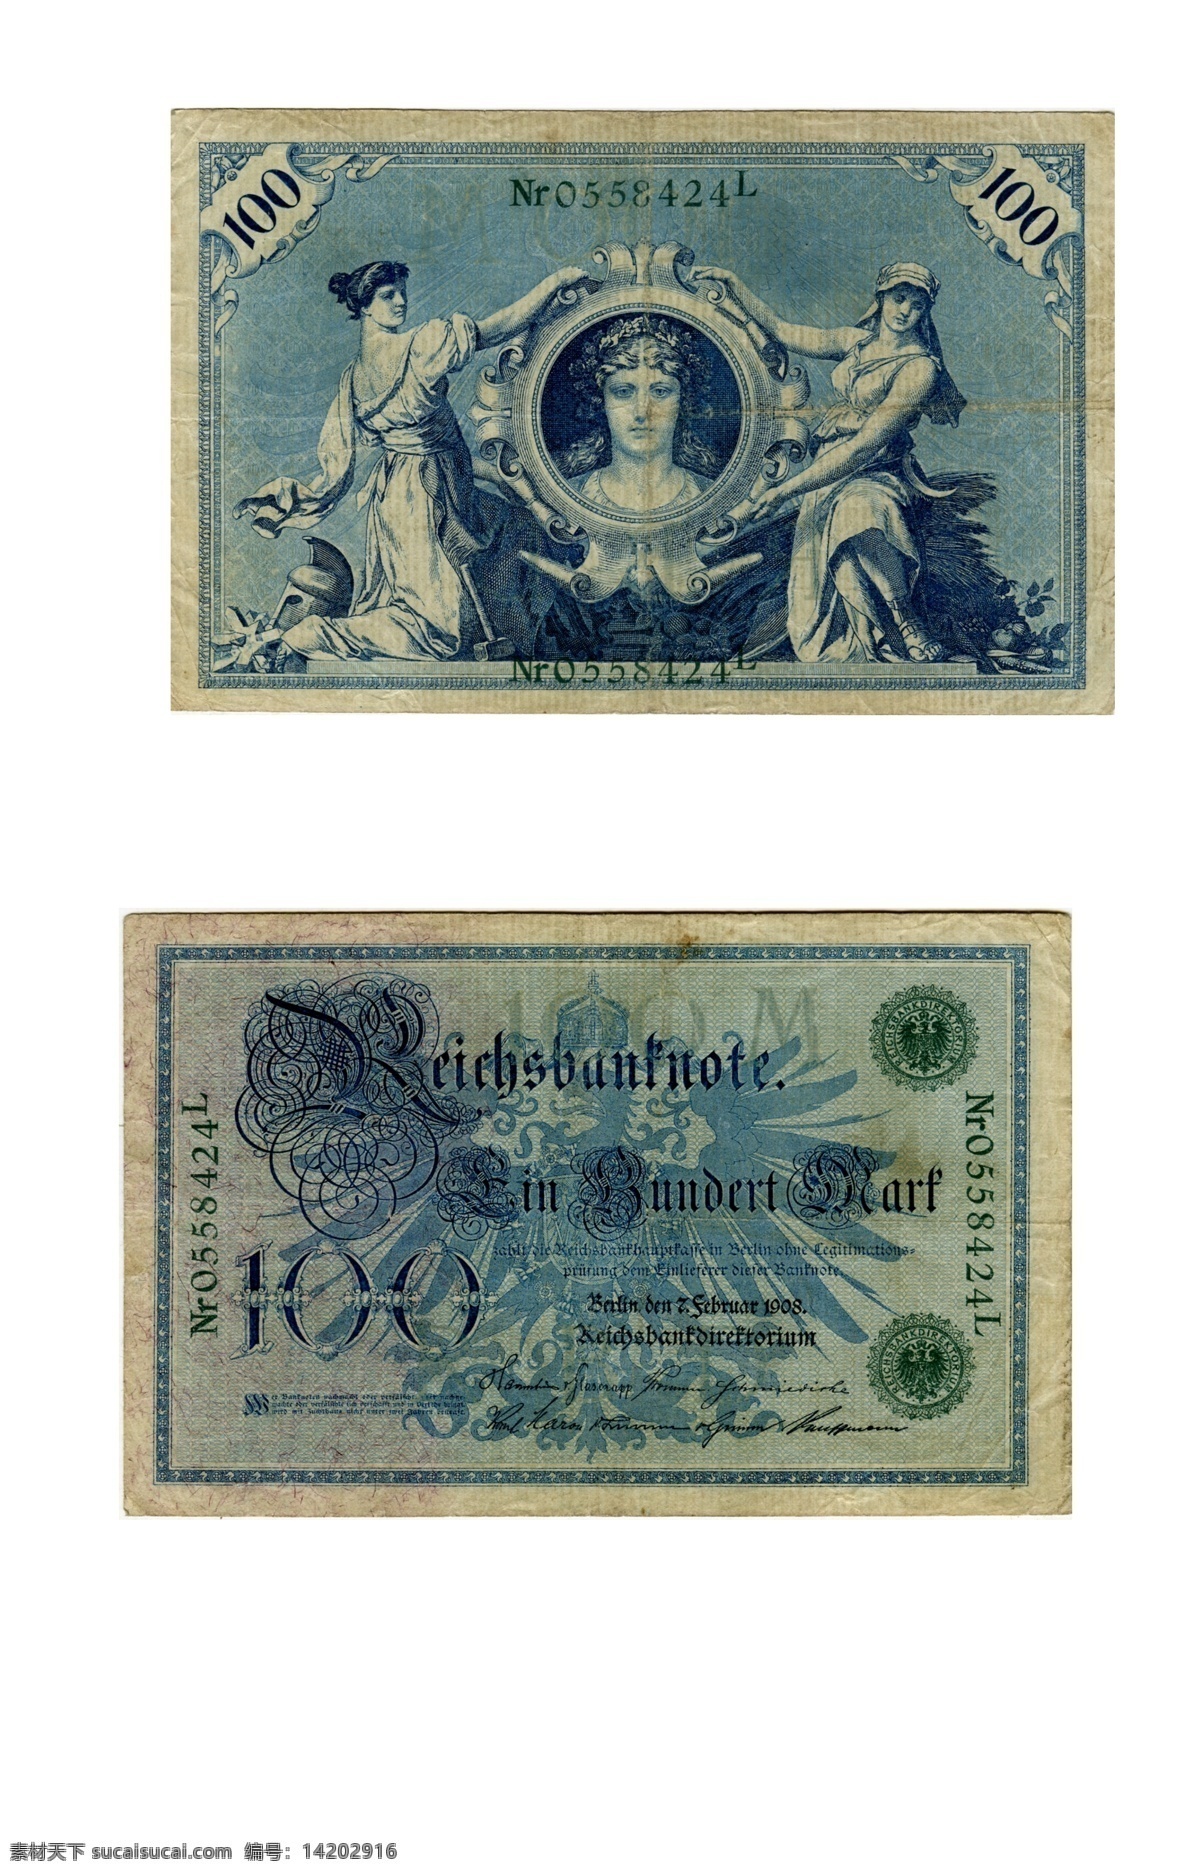 世界 上 最 精美 纸币 1908 年 德国 老版本的马克 真 钱 正反面 高清 扫描 老版 马克 外国纸币 高清扫描素材 源文件